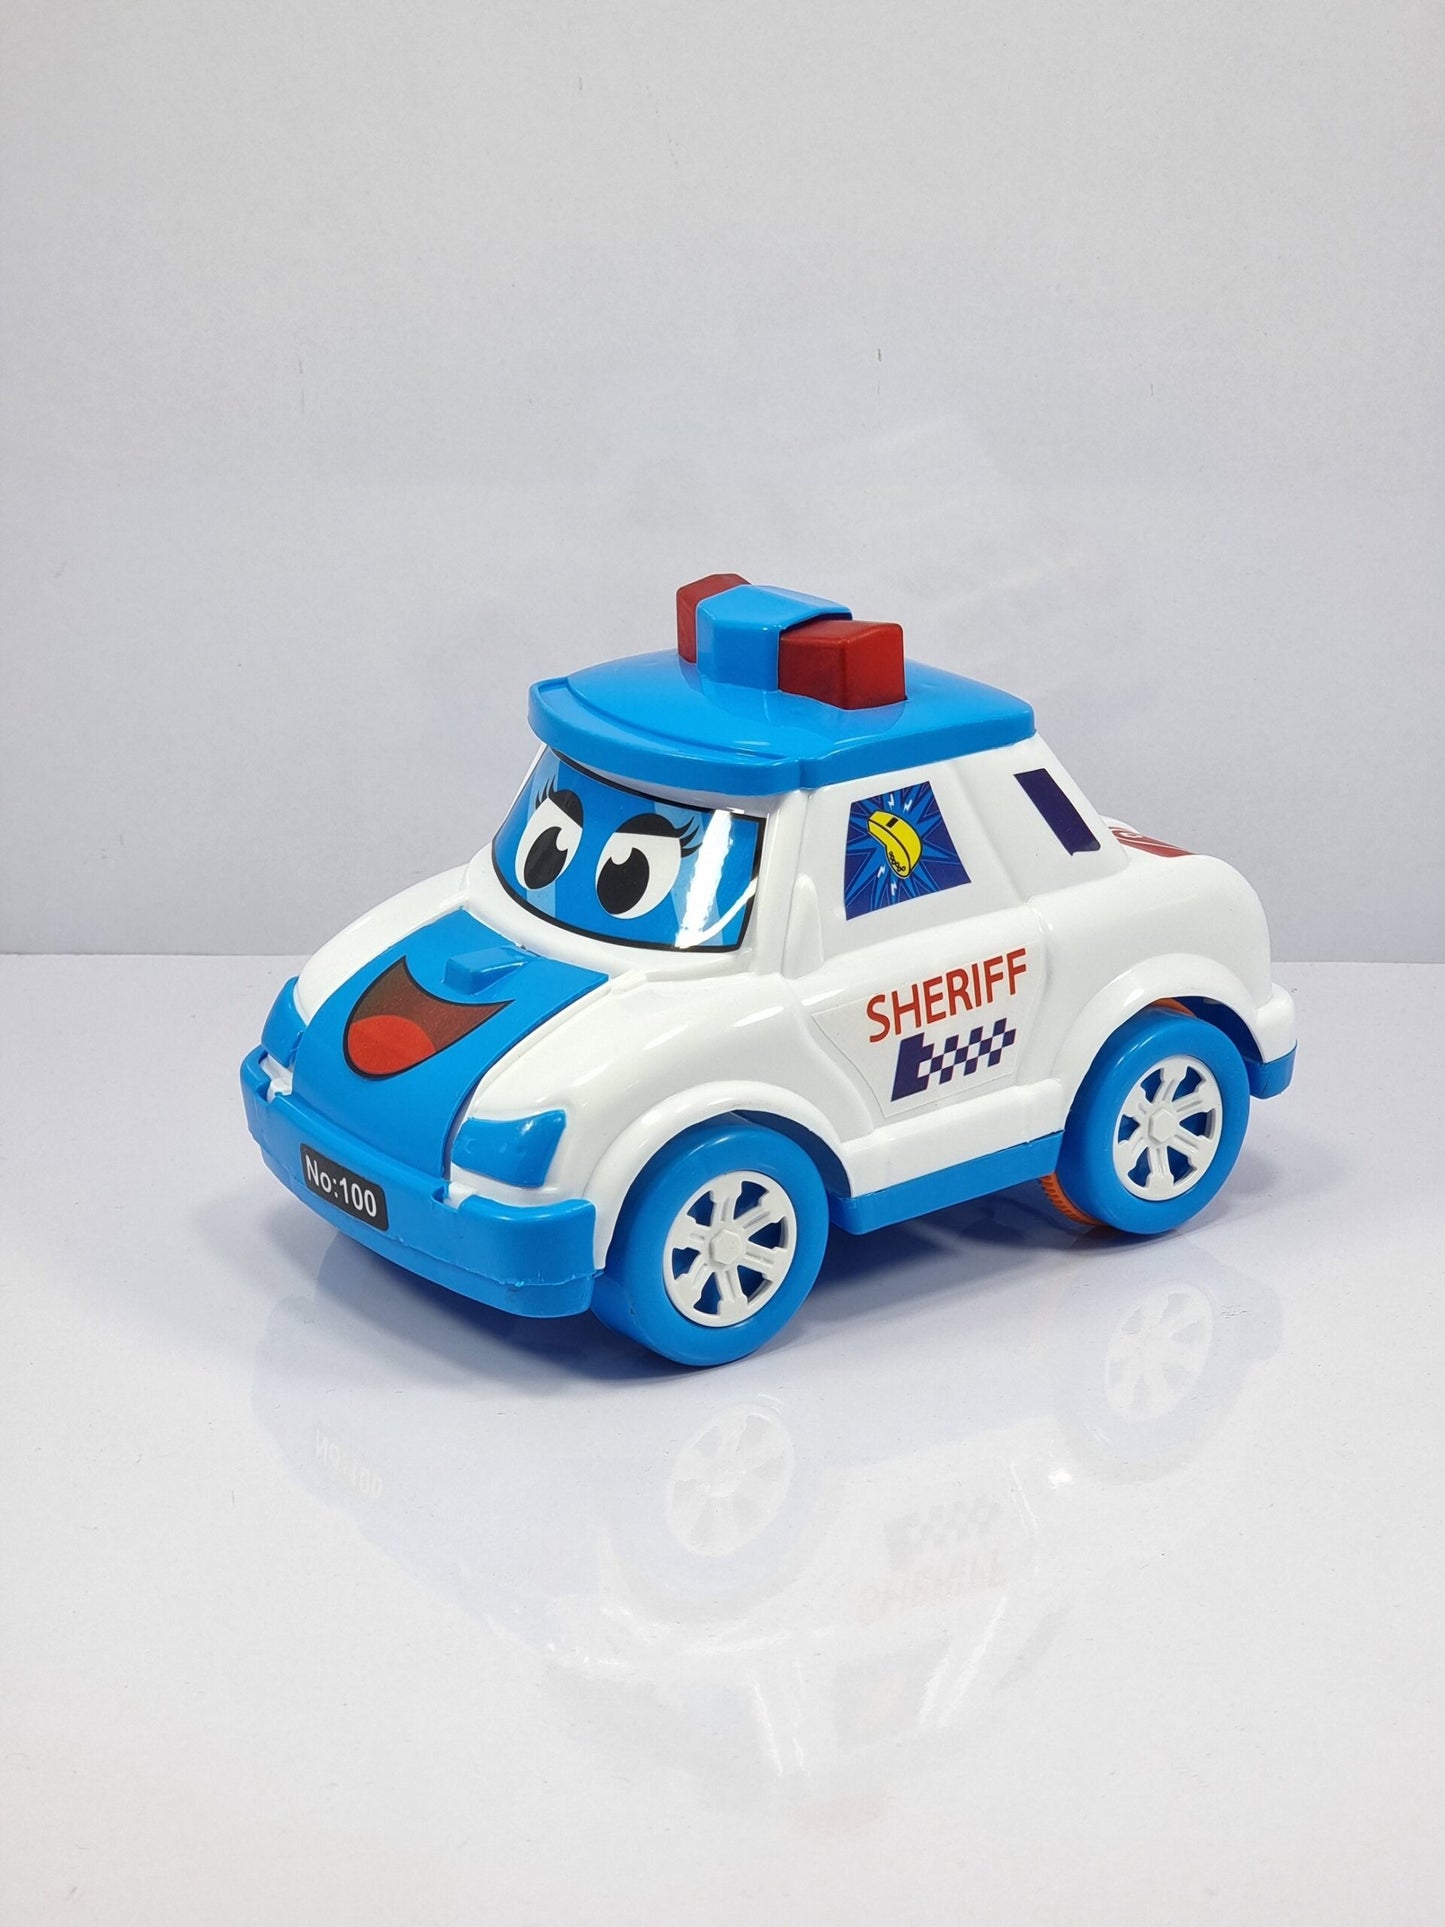 UA SHERIFF CAR (FRICTION BASED )